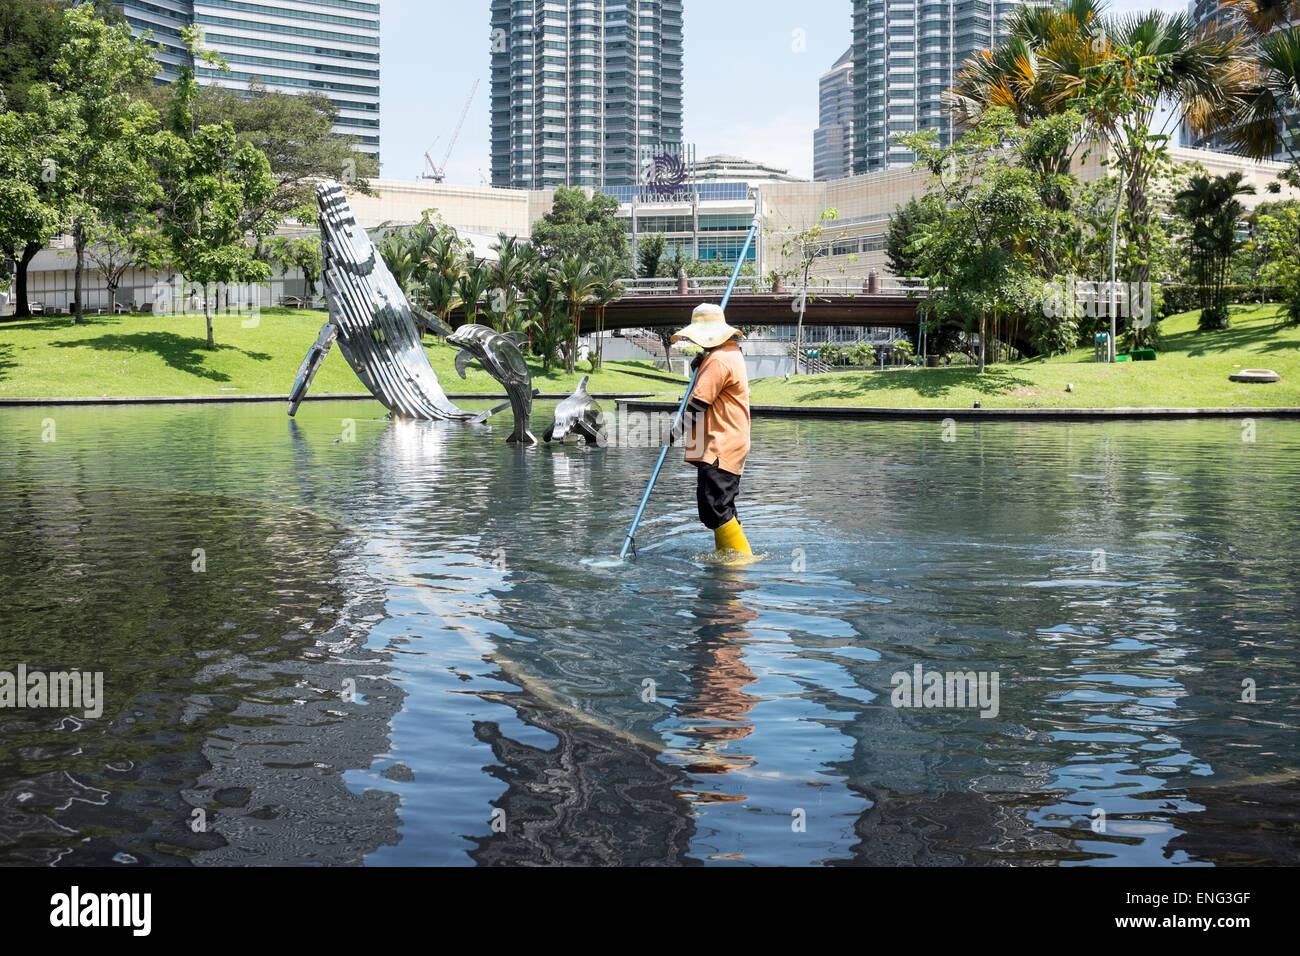 Un lavoratore migrante pulisce uno dei laghi del Parco KLCC di Kuala Lumpur in Malesia. Foto Stock